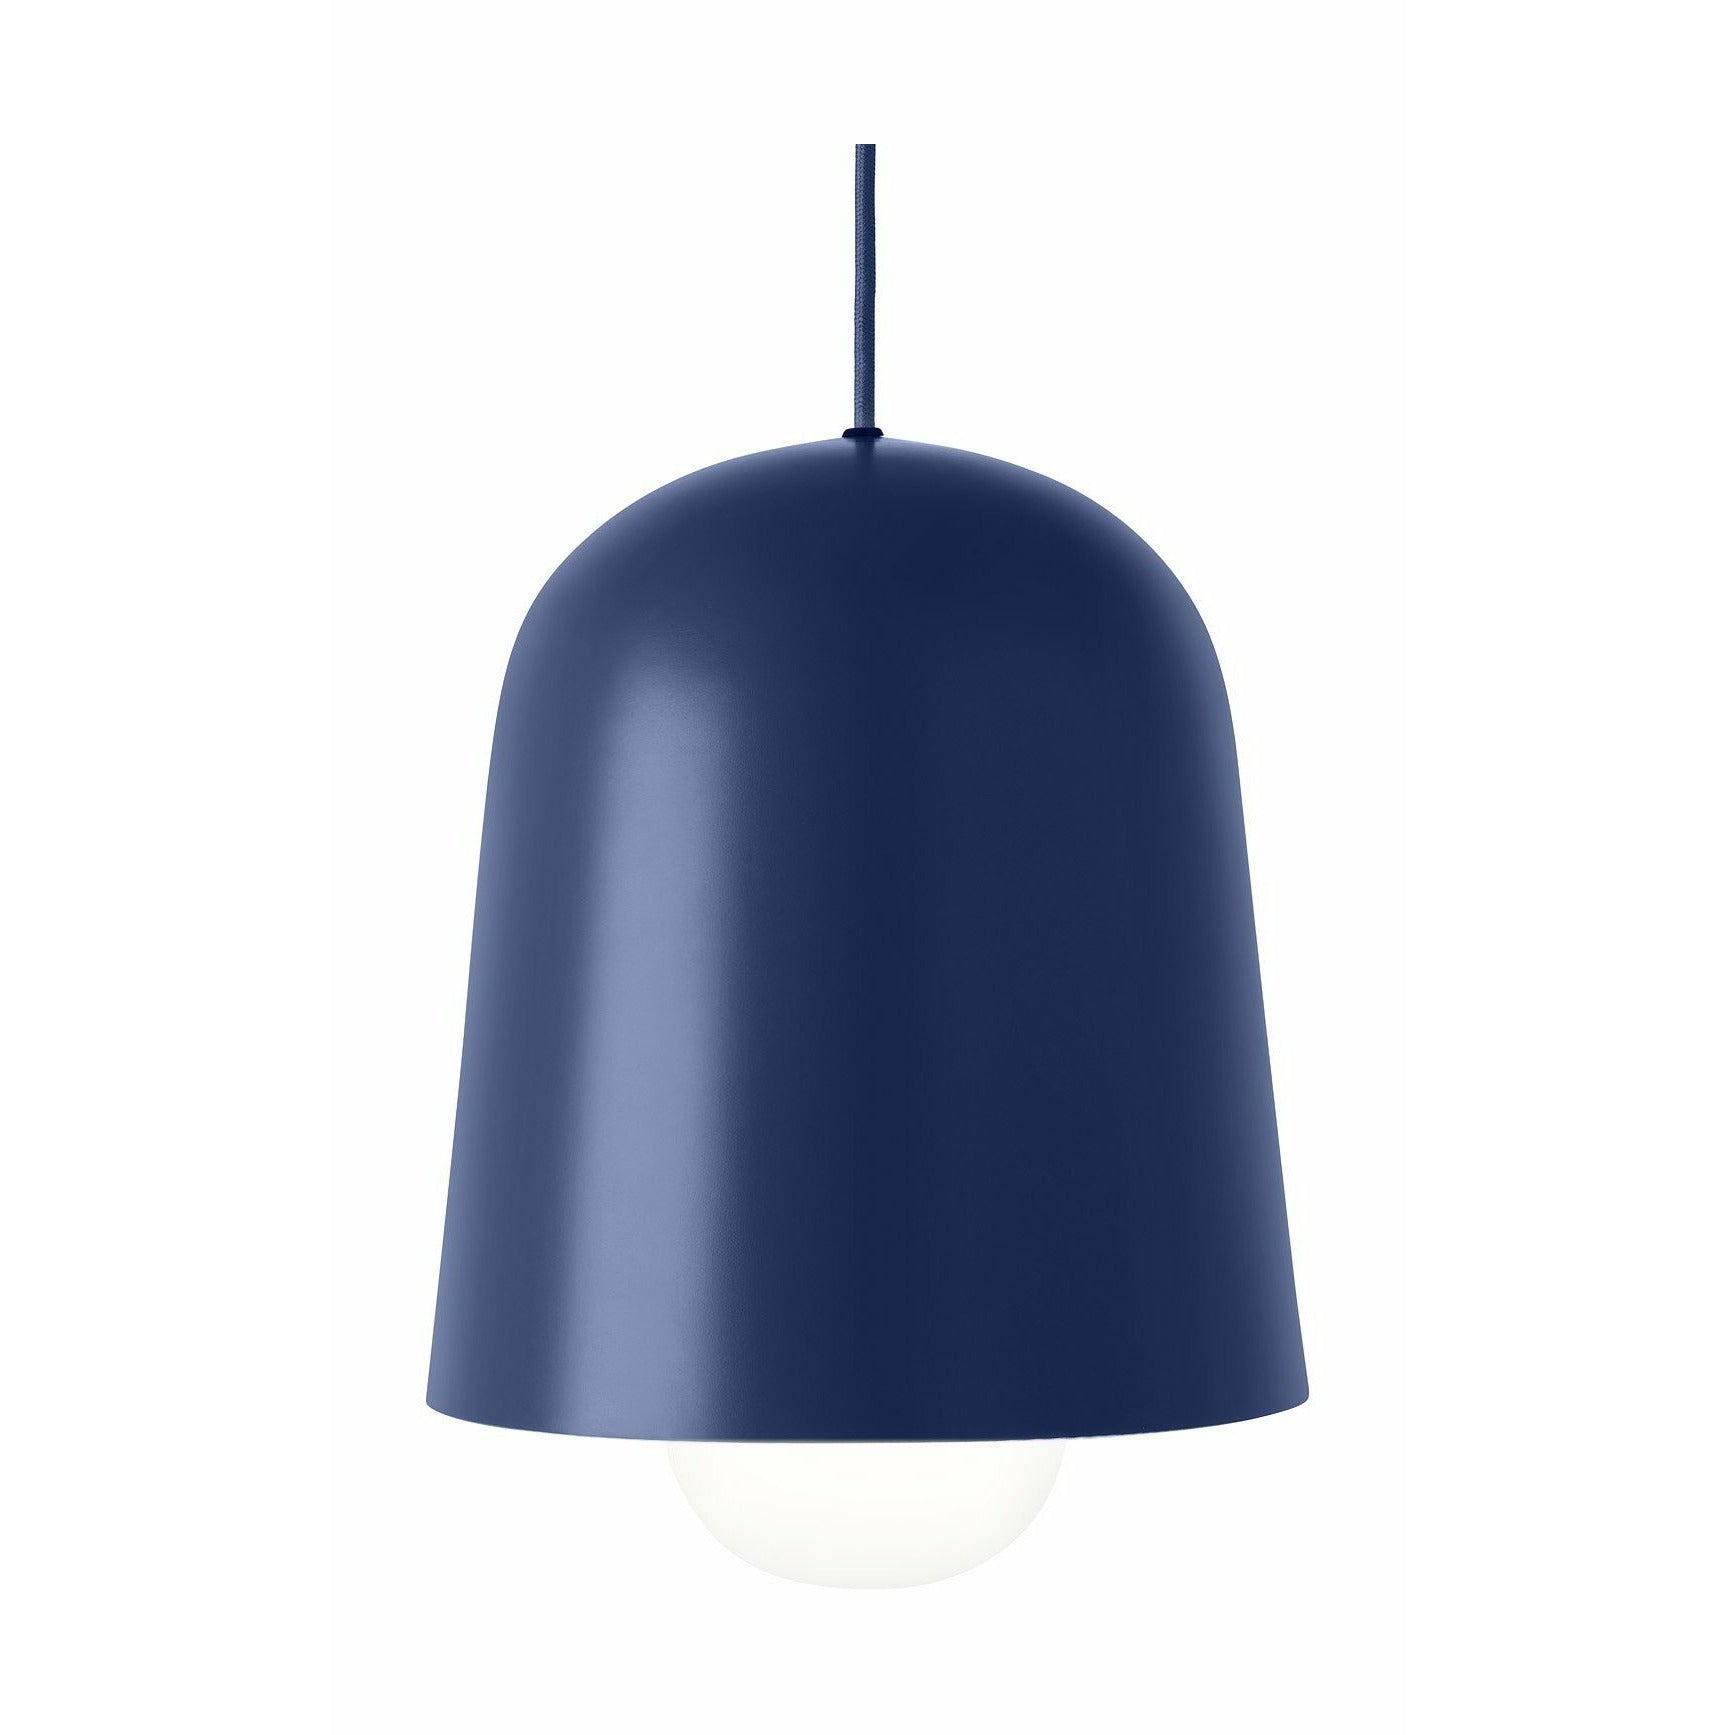 Puik Kegel hanger lamp, donkerblauw